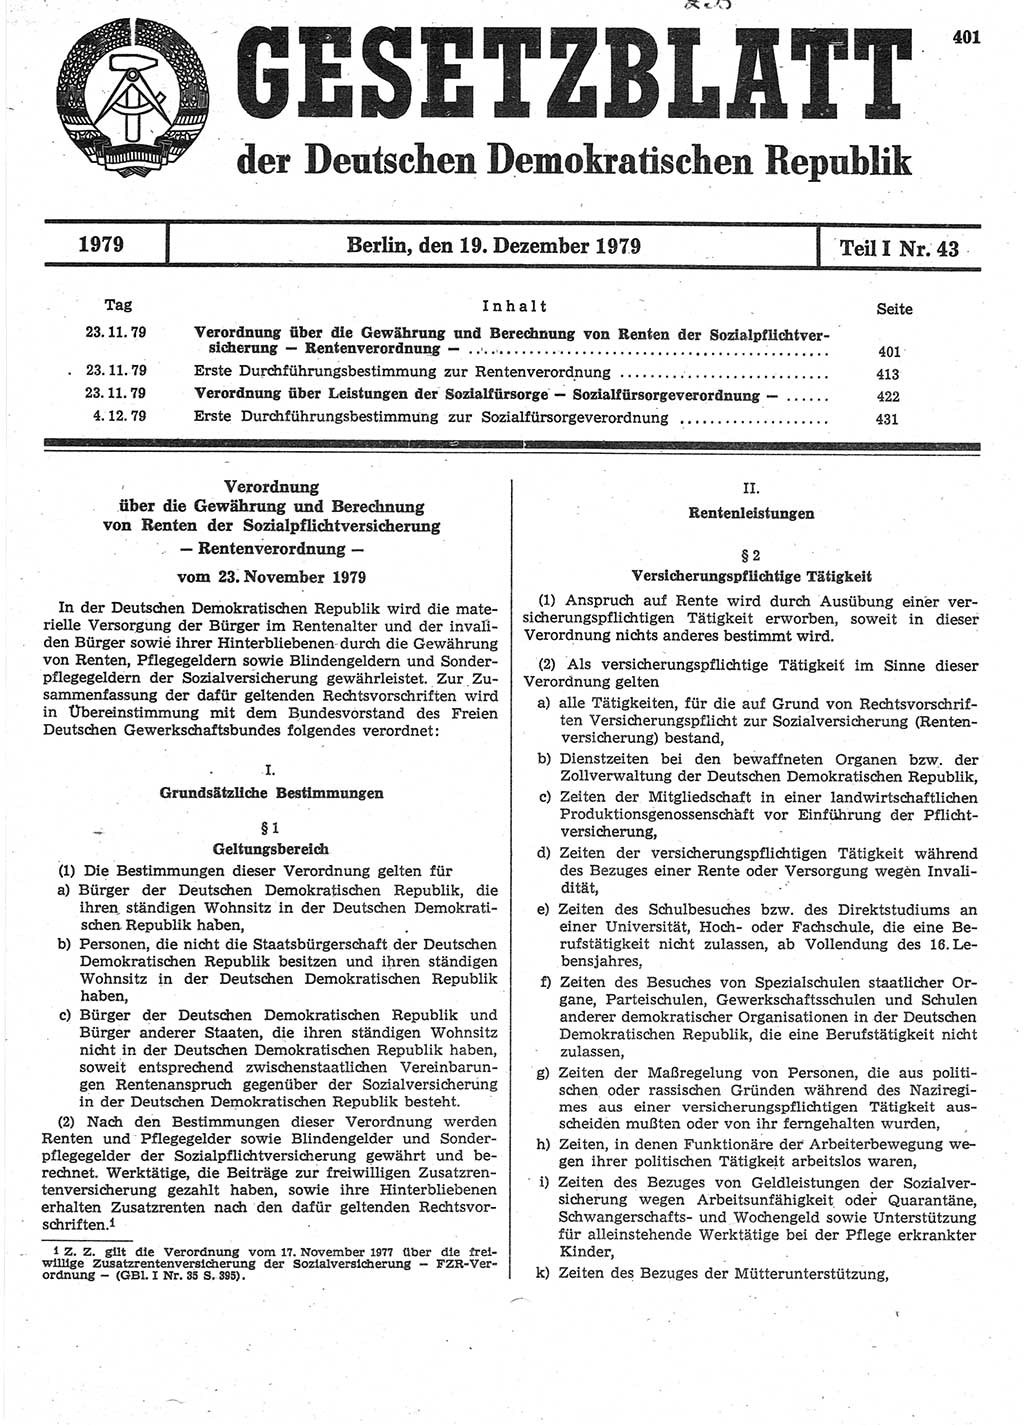 Gesetzblatt (GBl.) der Deutschen Demokratischen Republik (DDR) Teil Ⅰ 1979, Seite 401 (GBl. DDR Ⅰ 1979, S. 401)